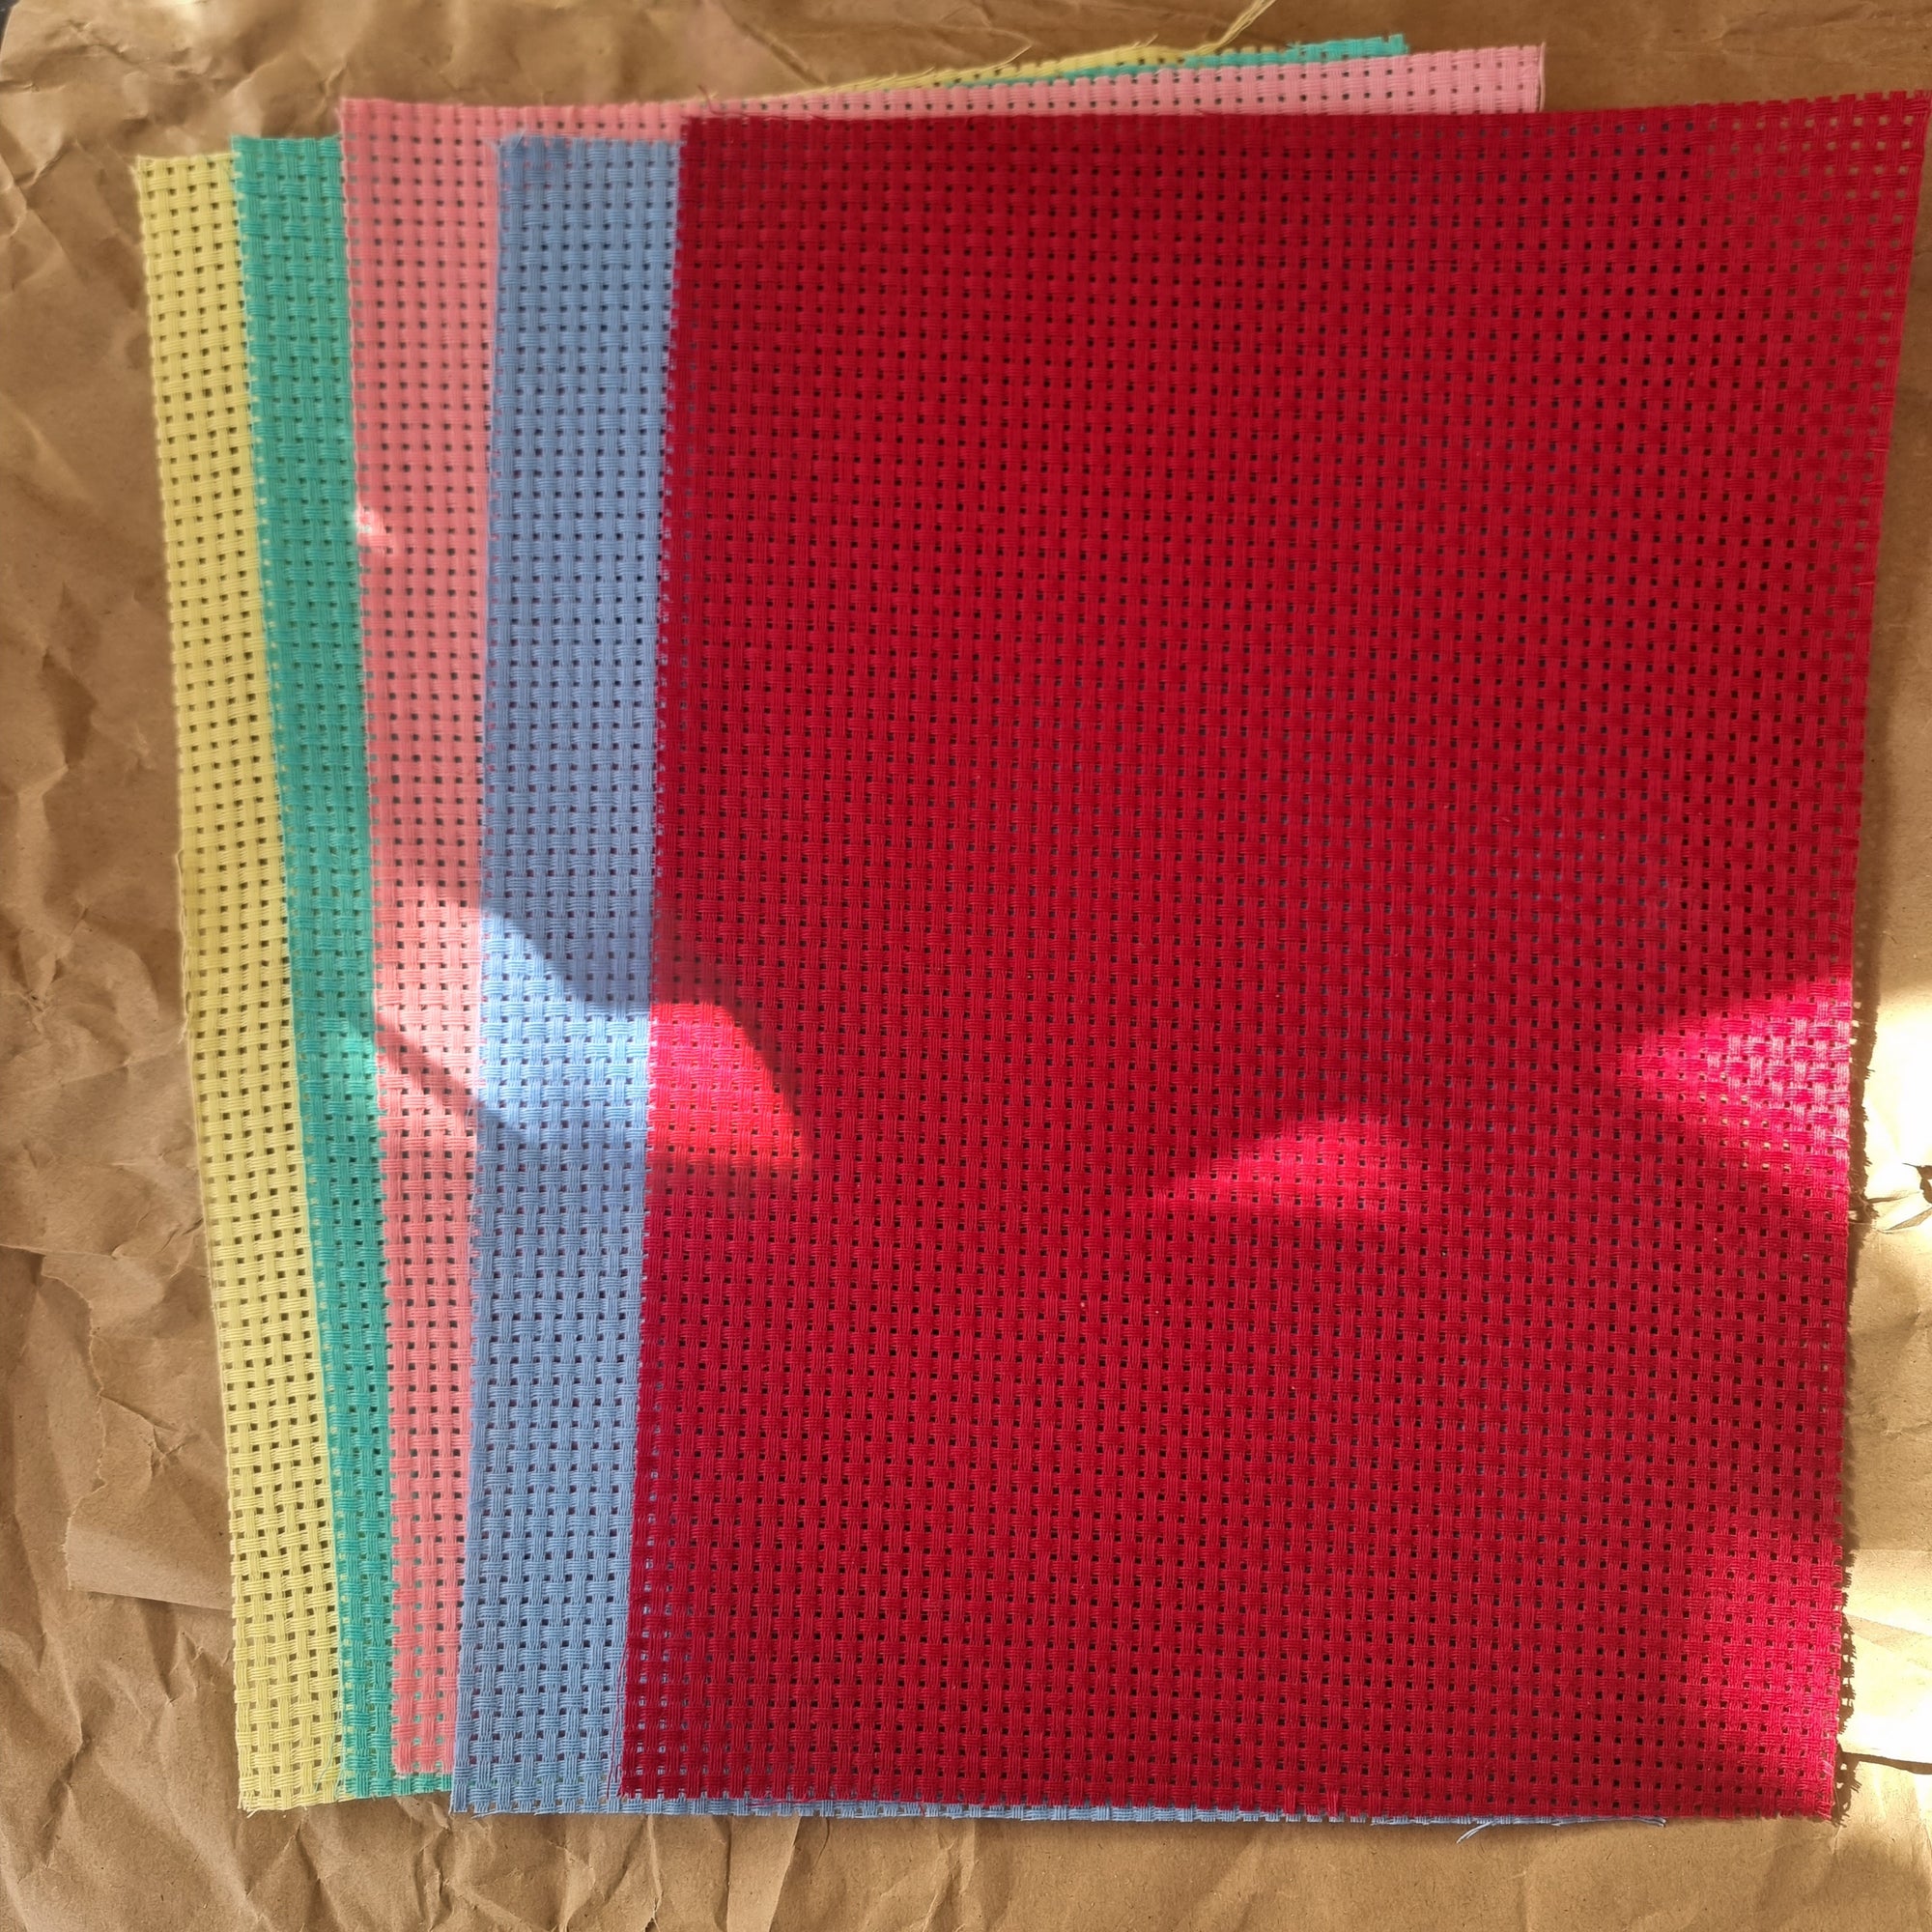 Cross Stitch fabric × 1 sheet (25cmx35cm)